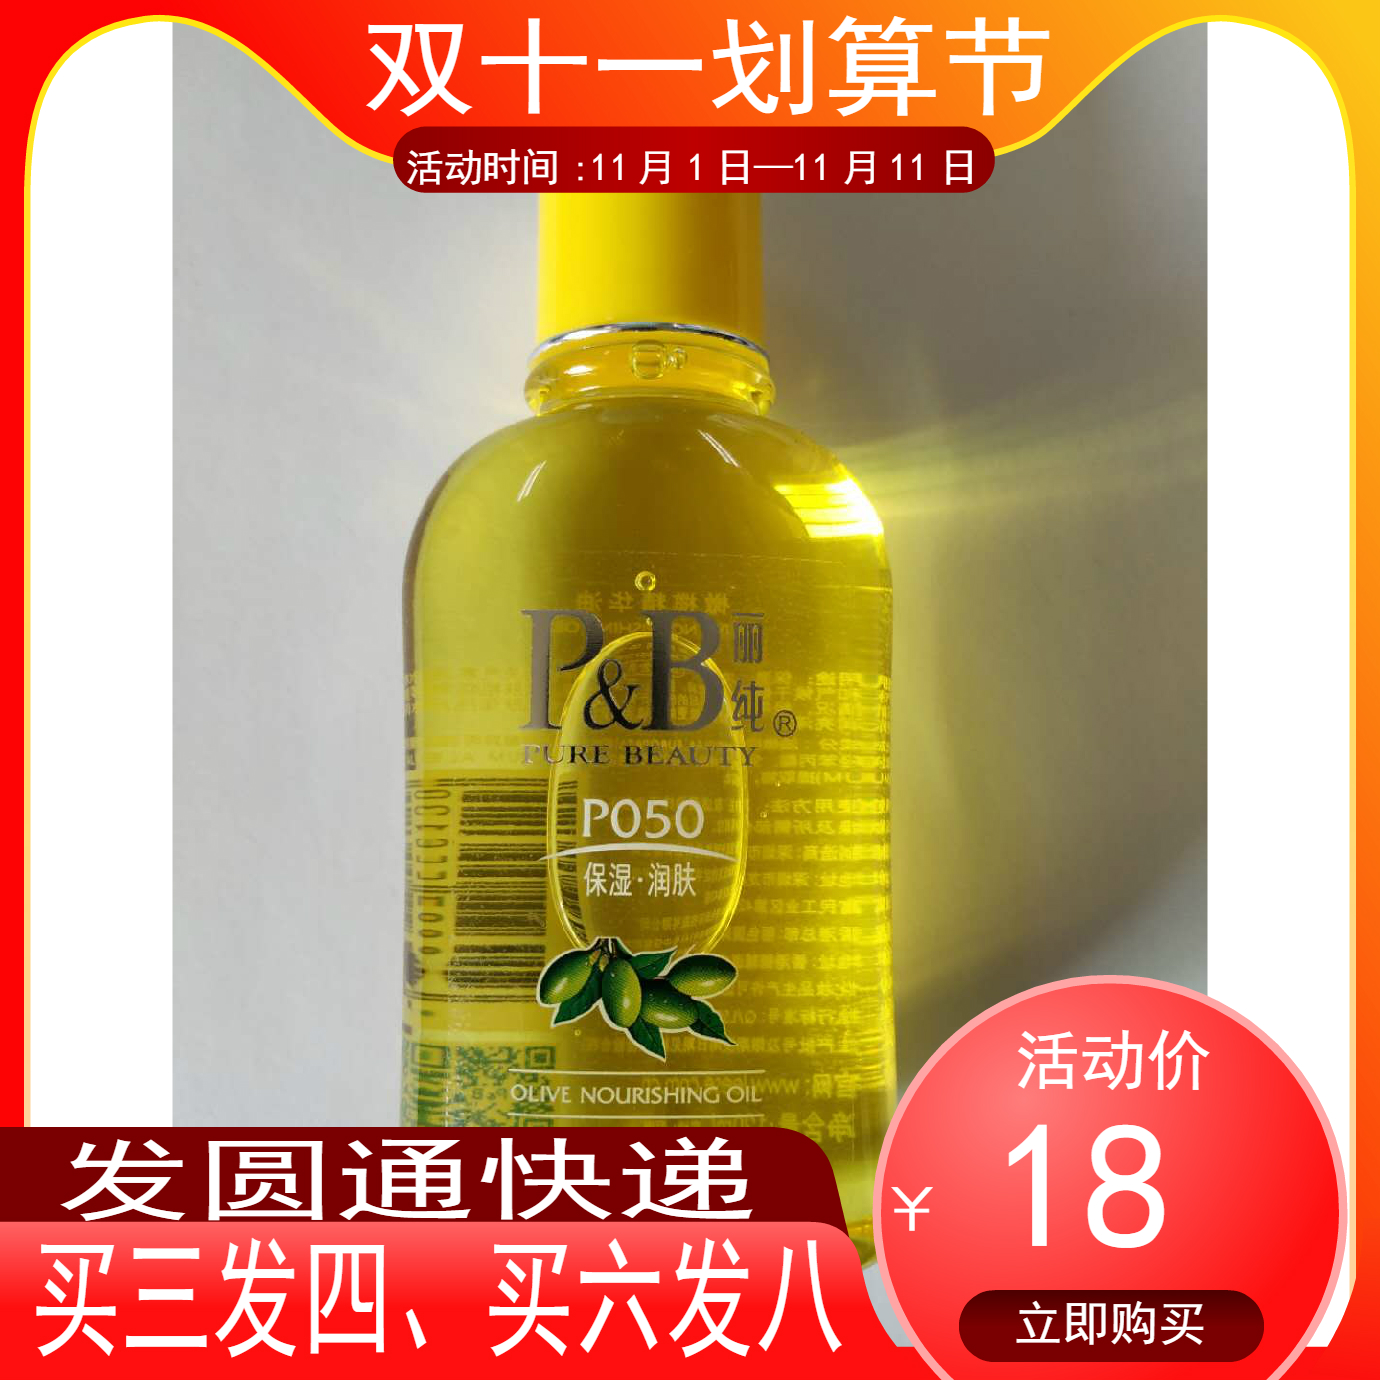 丽纯橄榄油滋润润滑保湿光亮润肤橄榄精华油厂家正品P050